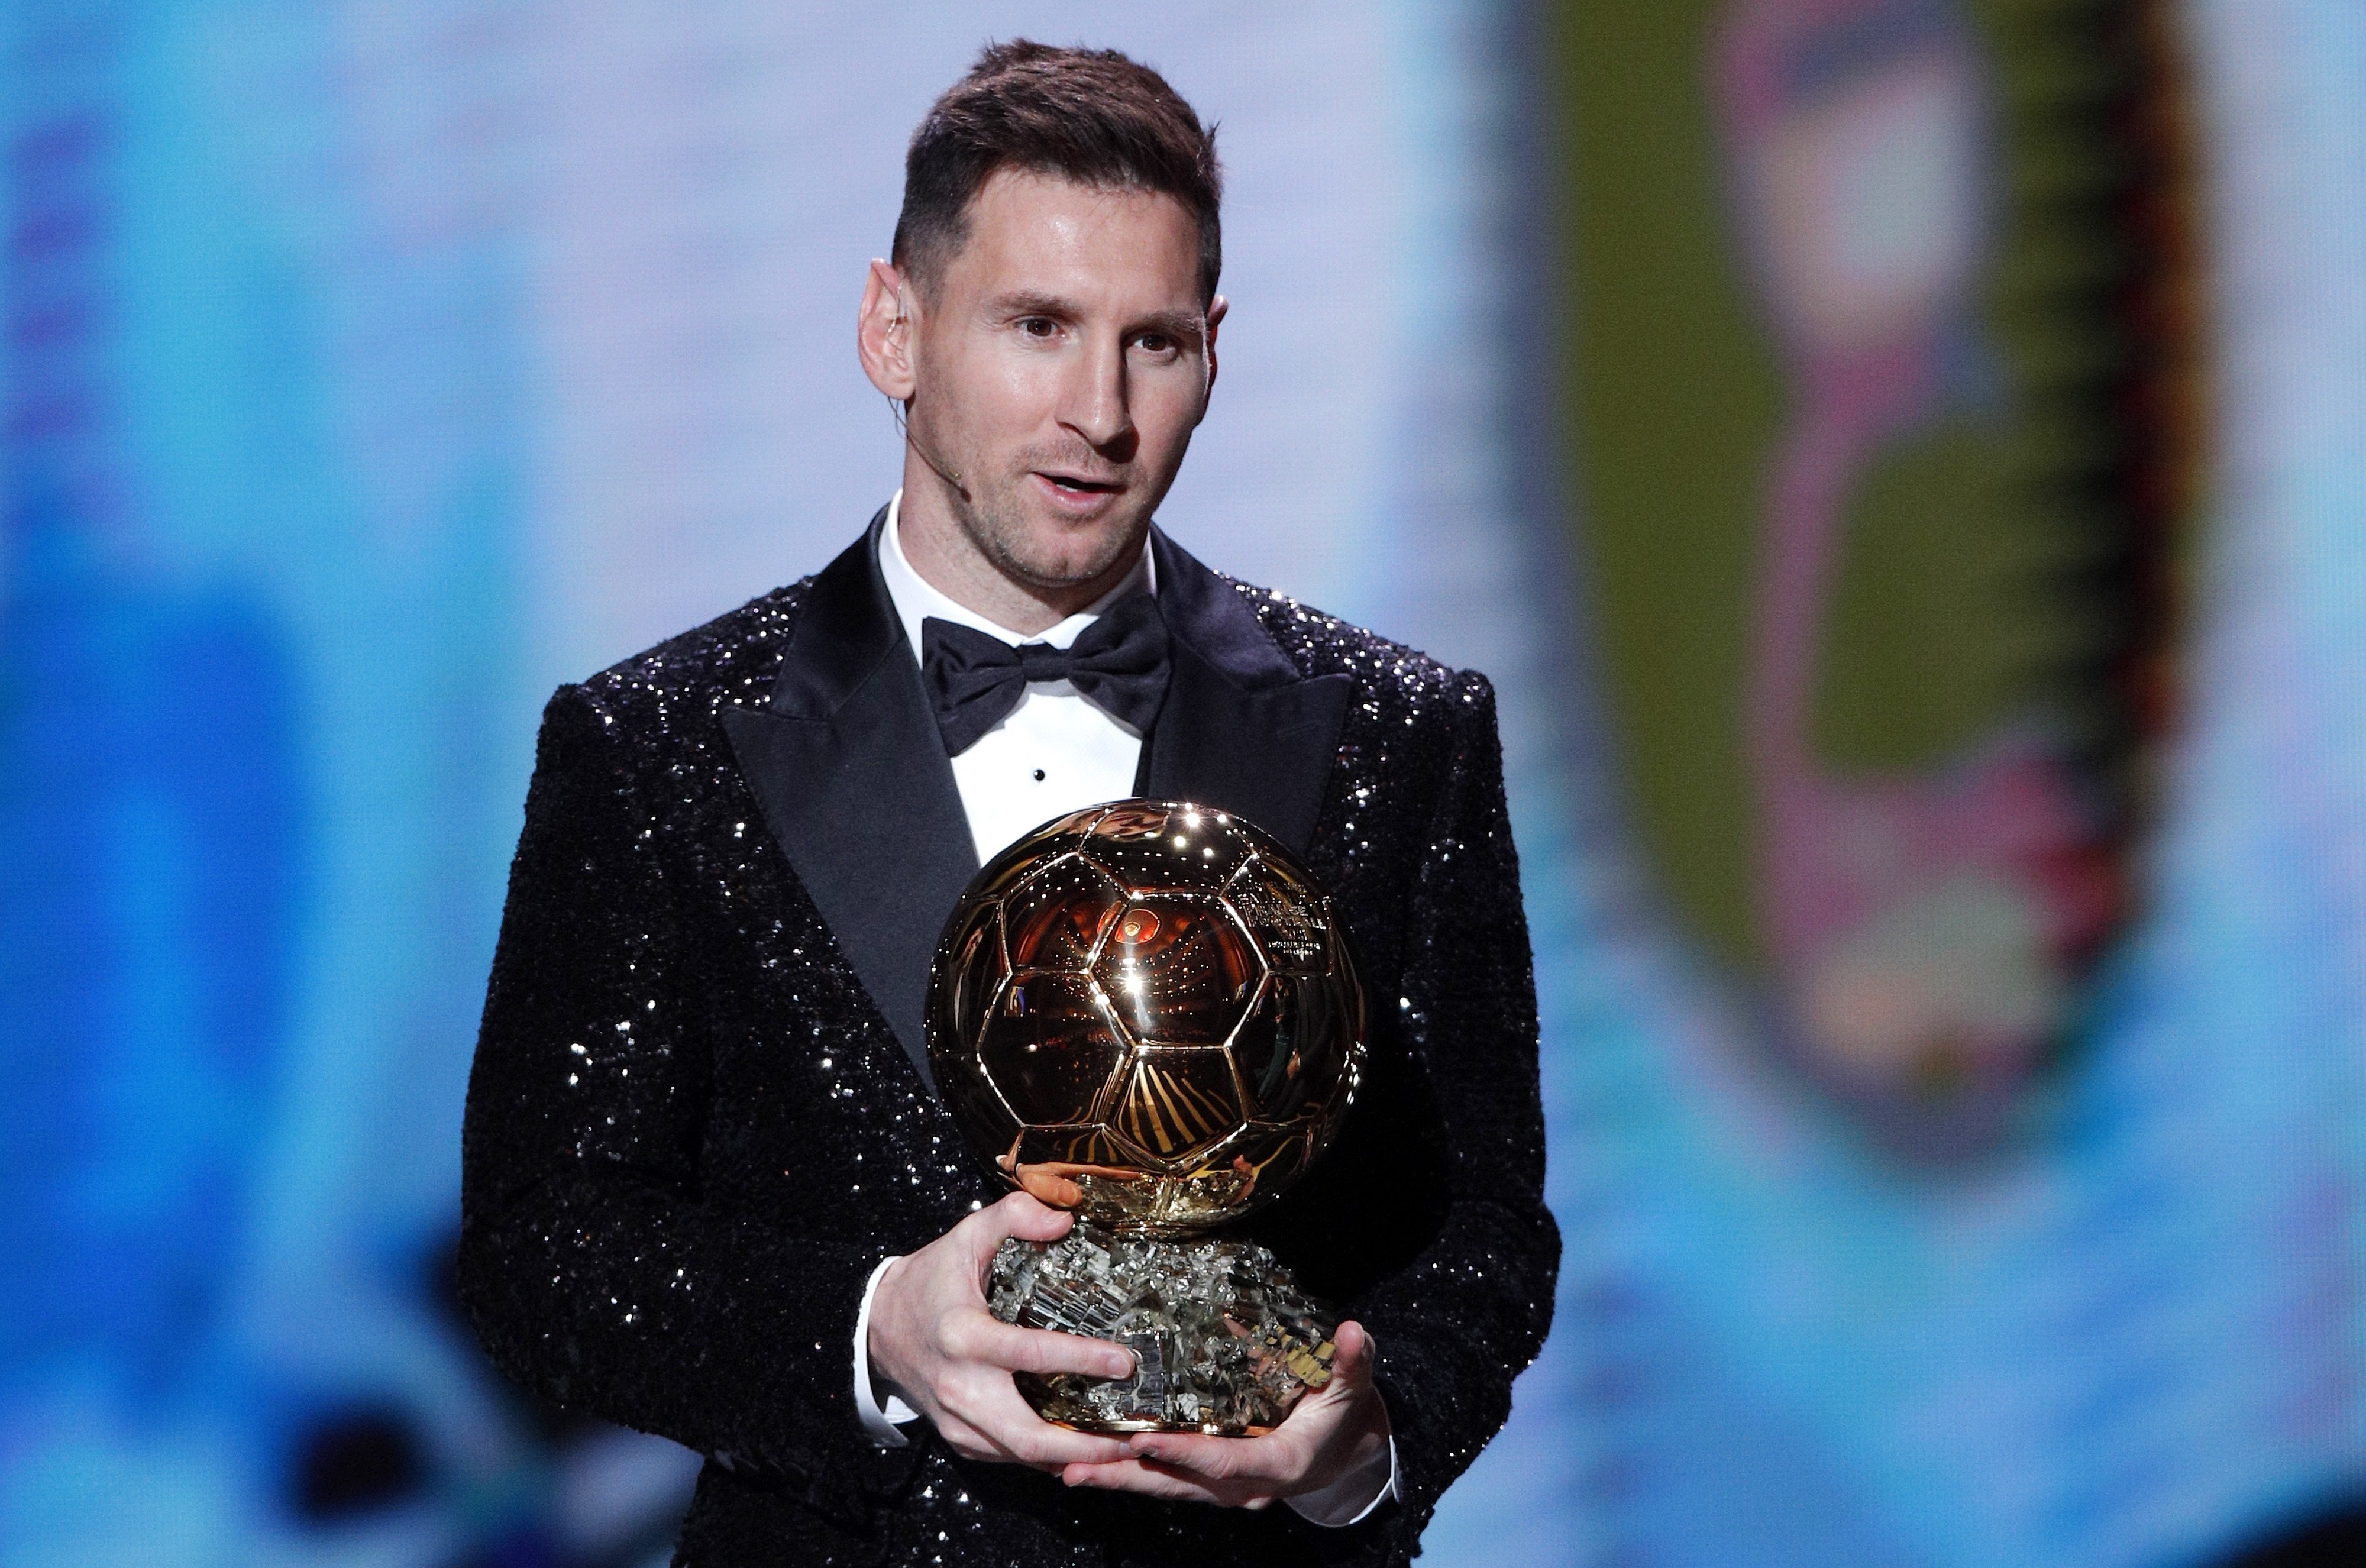 El jugador del PSG, Lionel Messi ganó su séptimo Balón de Oro este 29 de noviembre. Se lo entregaron en Paris. Foto Prensa Libre: EFE.